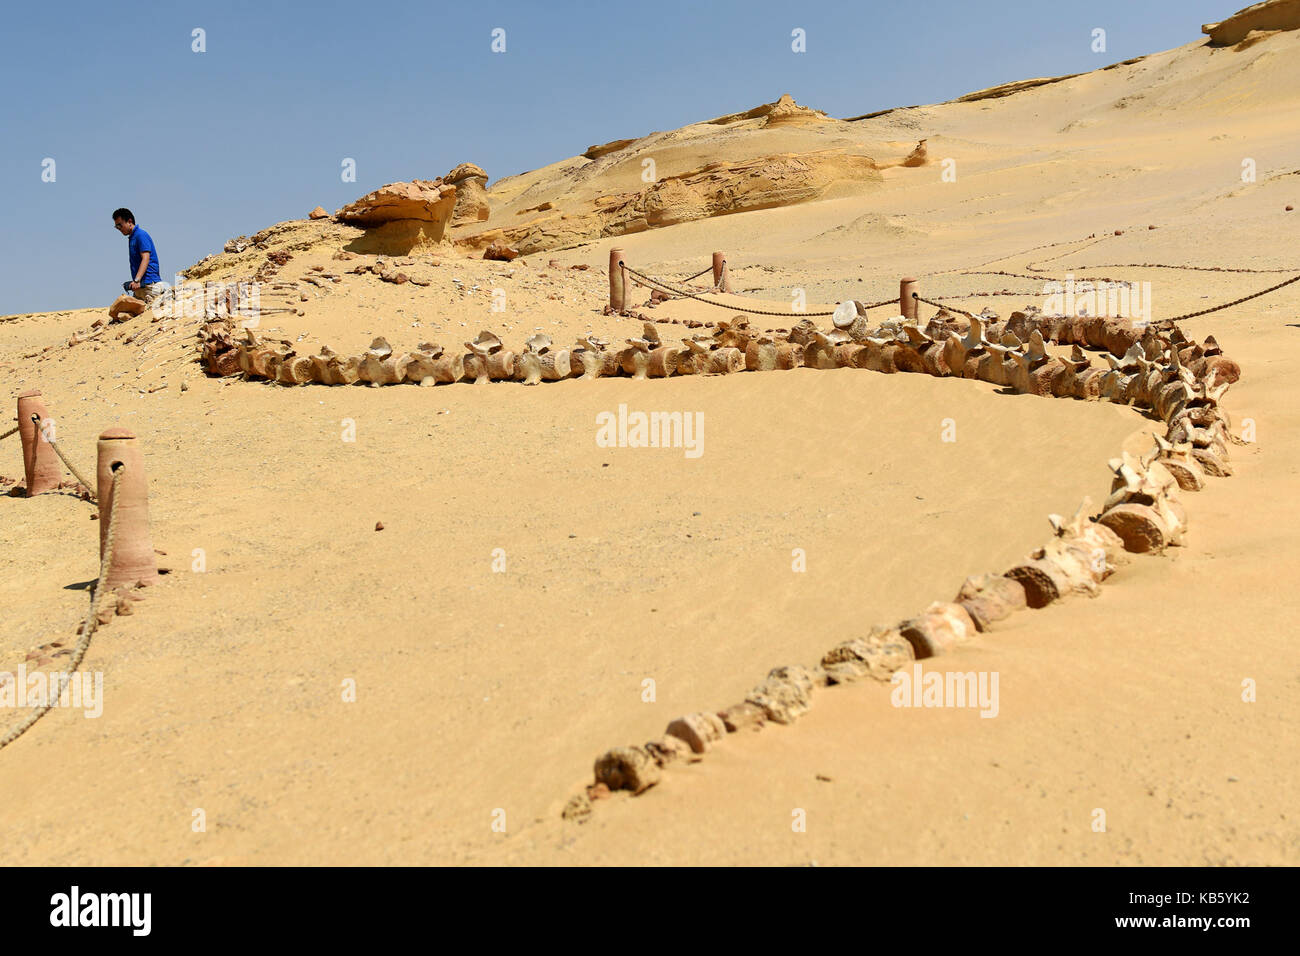 Il cairo, Egitto. 27Sep, 2017. Un turista in visita alla riserva naturale area di Wadi al-hitan, o la Valle delle Balene, nel governatorato fayoum, Egitto, sett. 27, 2017. wadi al-hitan, o la Valle delle Balene, è un sito paleontologico nel fayoum governatorato di Egitto. wadi al-hitan contiene preziosi resti fossili di prima e ora estinto, sottordine delle balene, archaeoceti. Essa è stata designata una organizzazione delle Nazioni Unite per l'educazione, la scienza e la cultura (Unesco) sito patrimonio mondiale nel 2005. Credito: Zhao dingzhe/xinhua/alamy live news Foto Stock